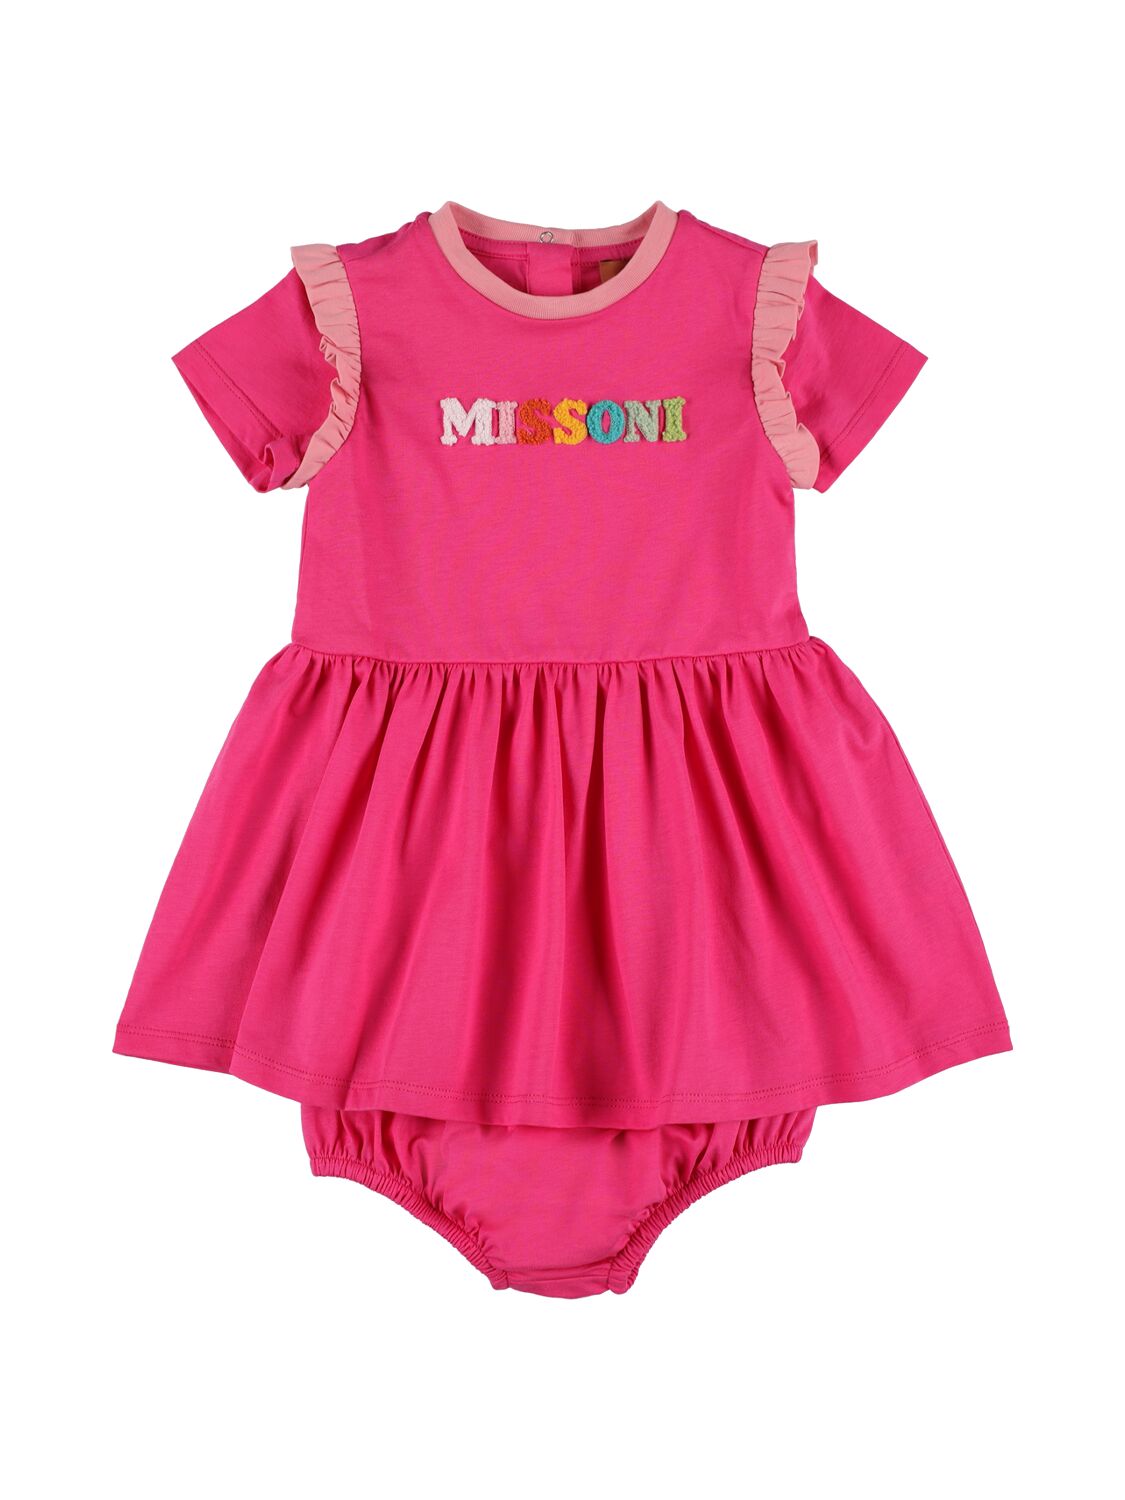 Missoni Kids' Cotton Jersey Dress & Diaper Cover In Fuchsia